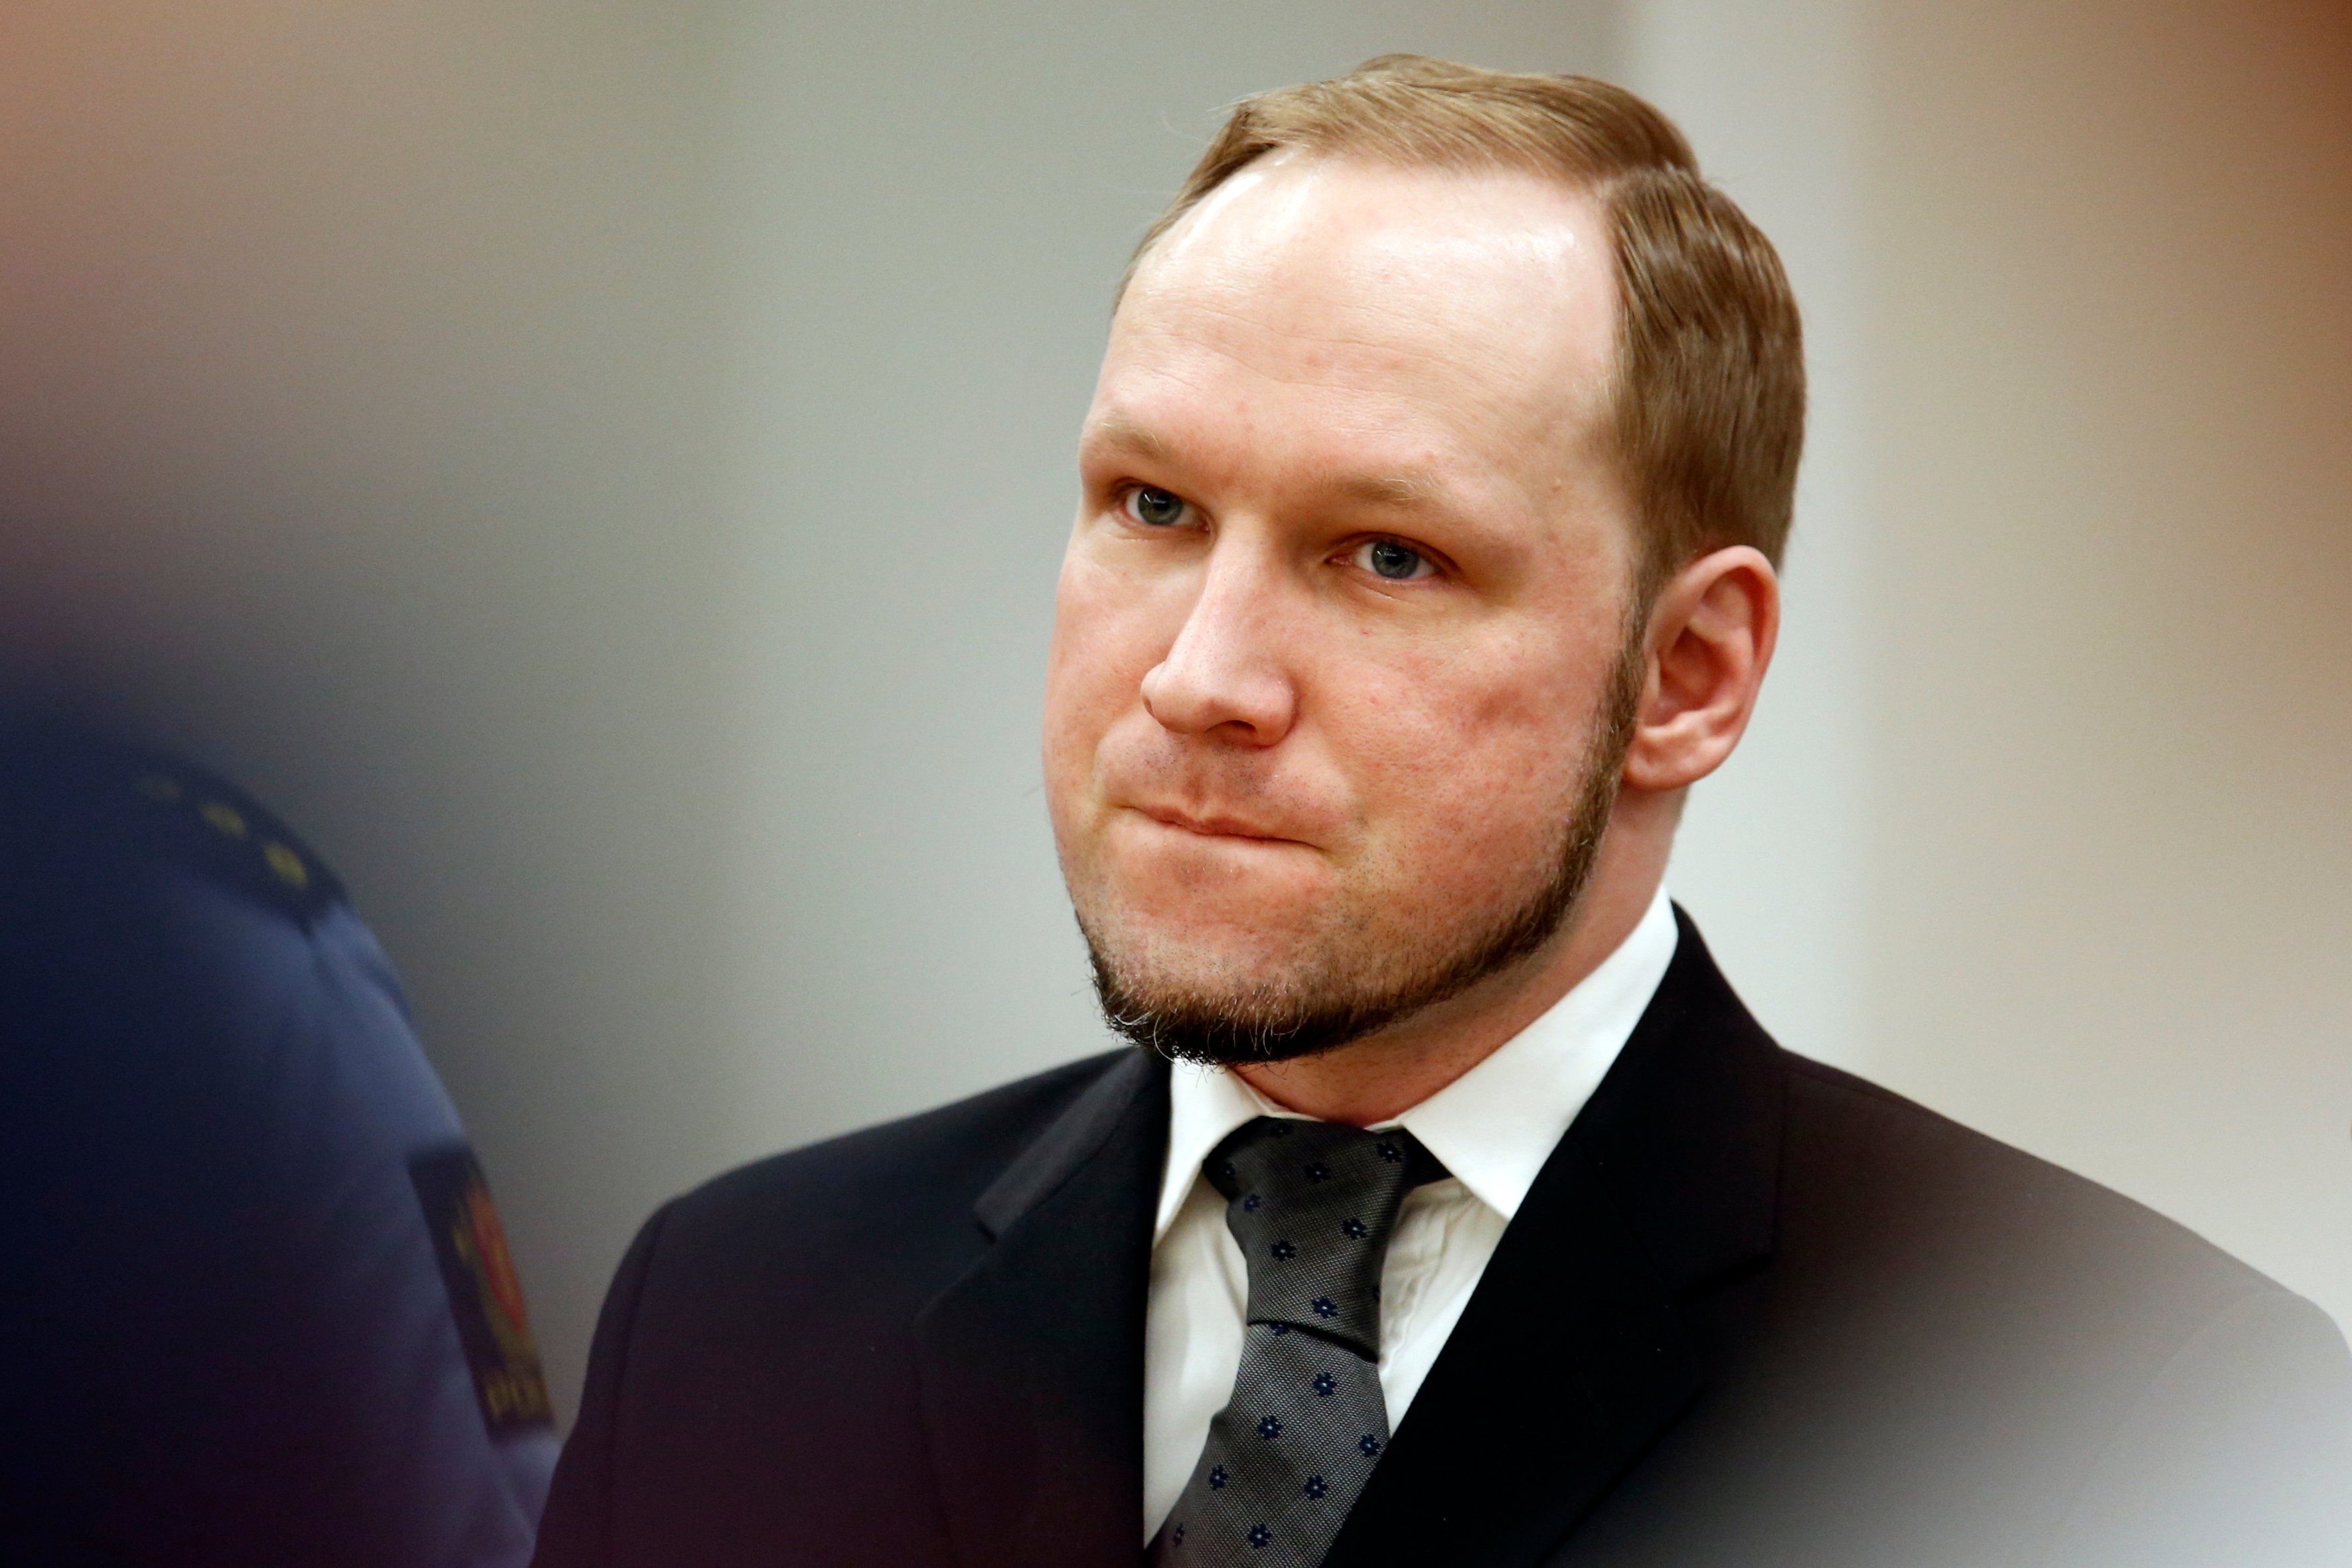 Anders Behring Breivik, Utøya, Norge, Hotad